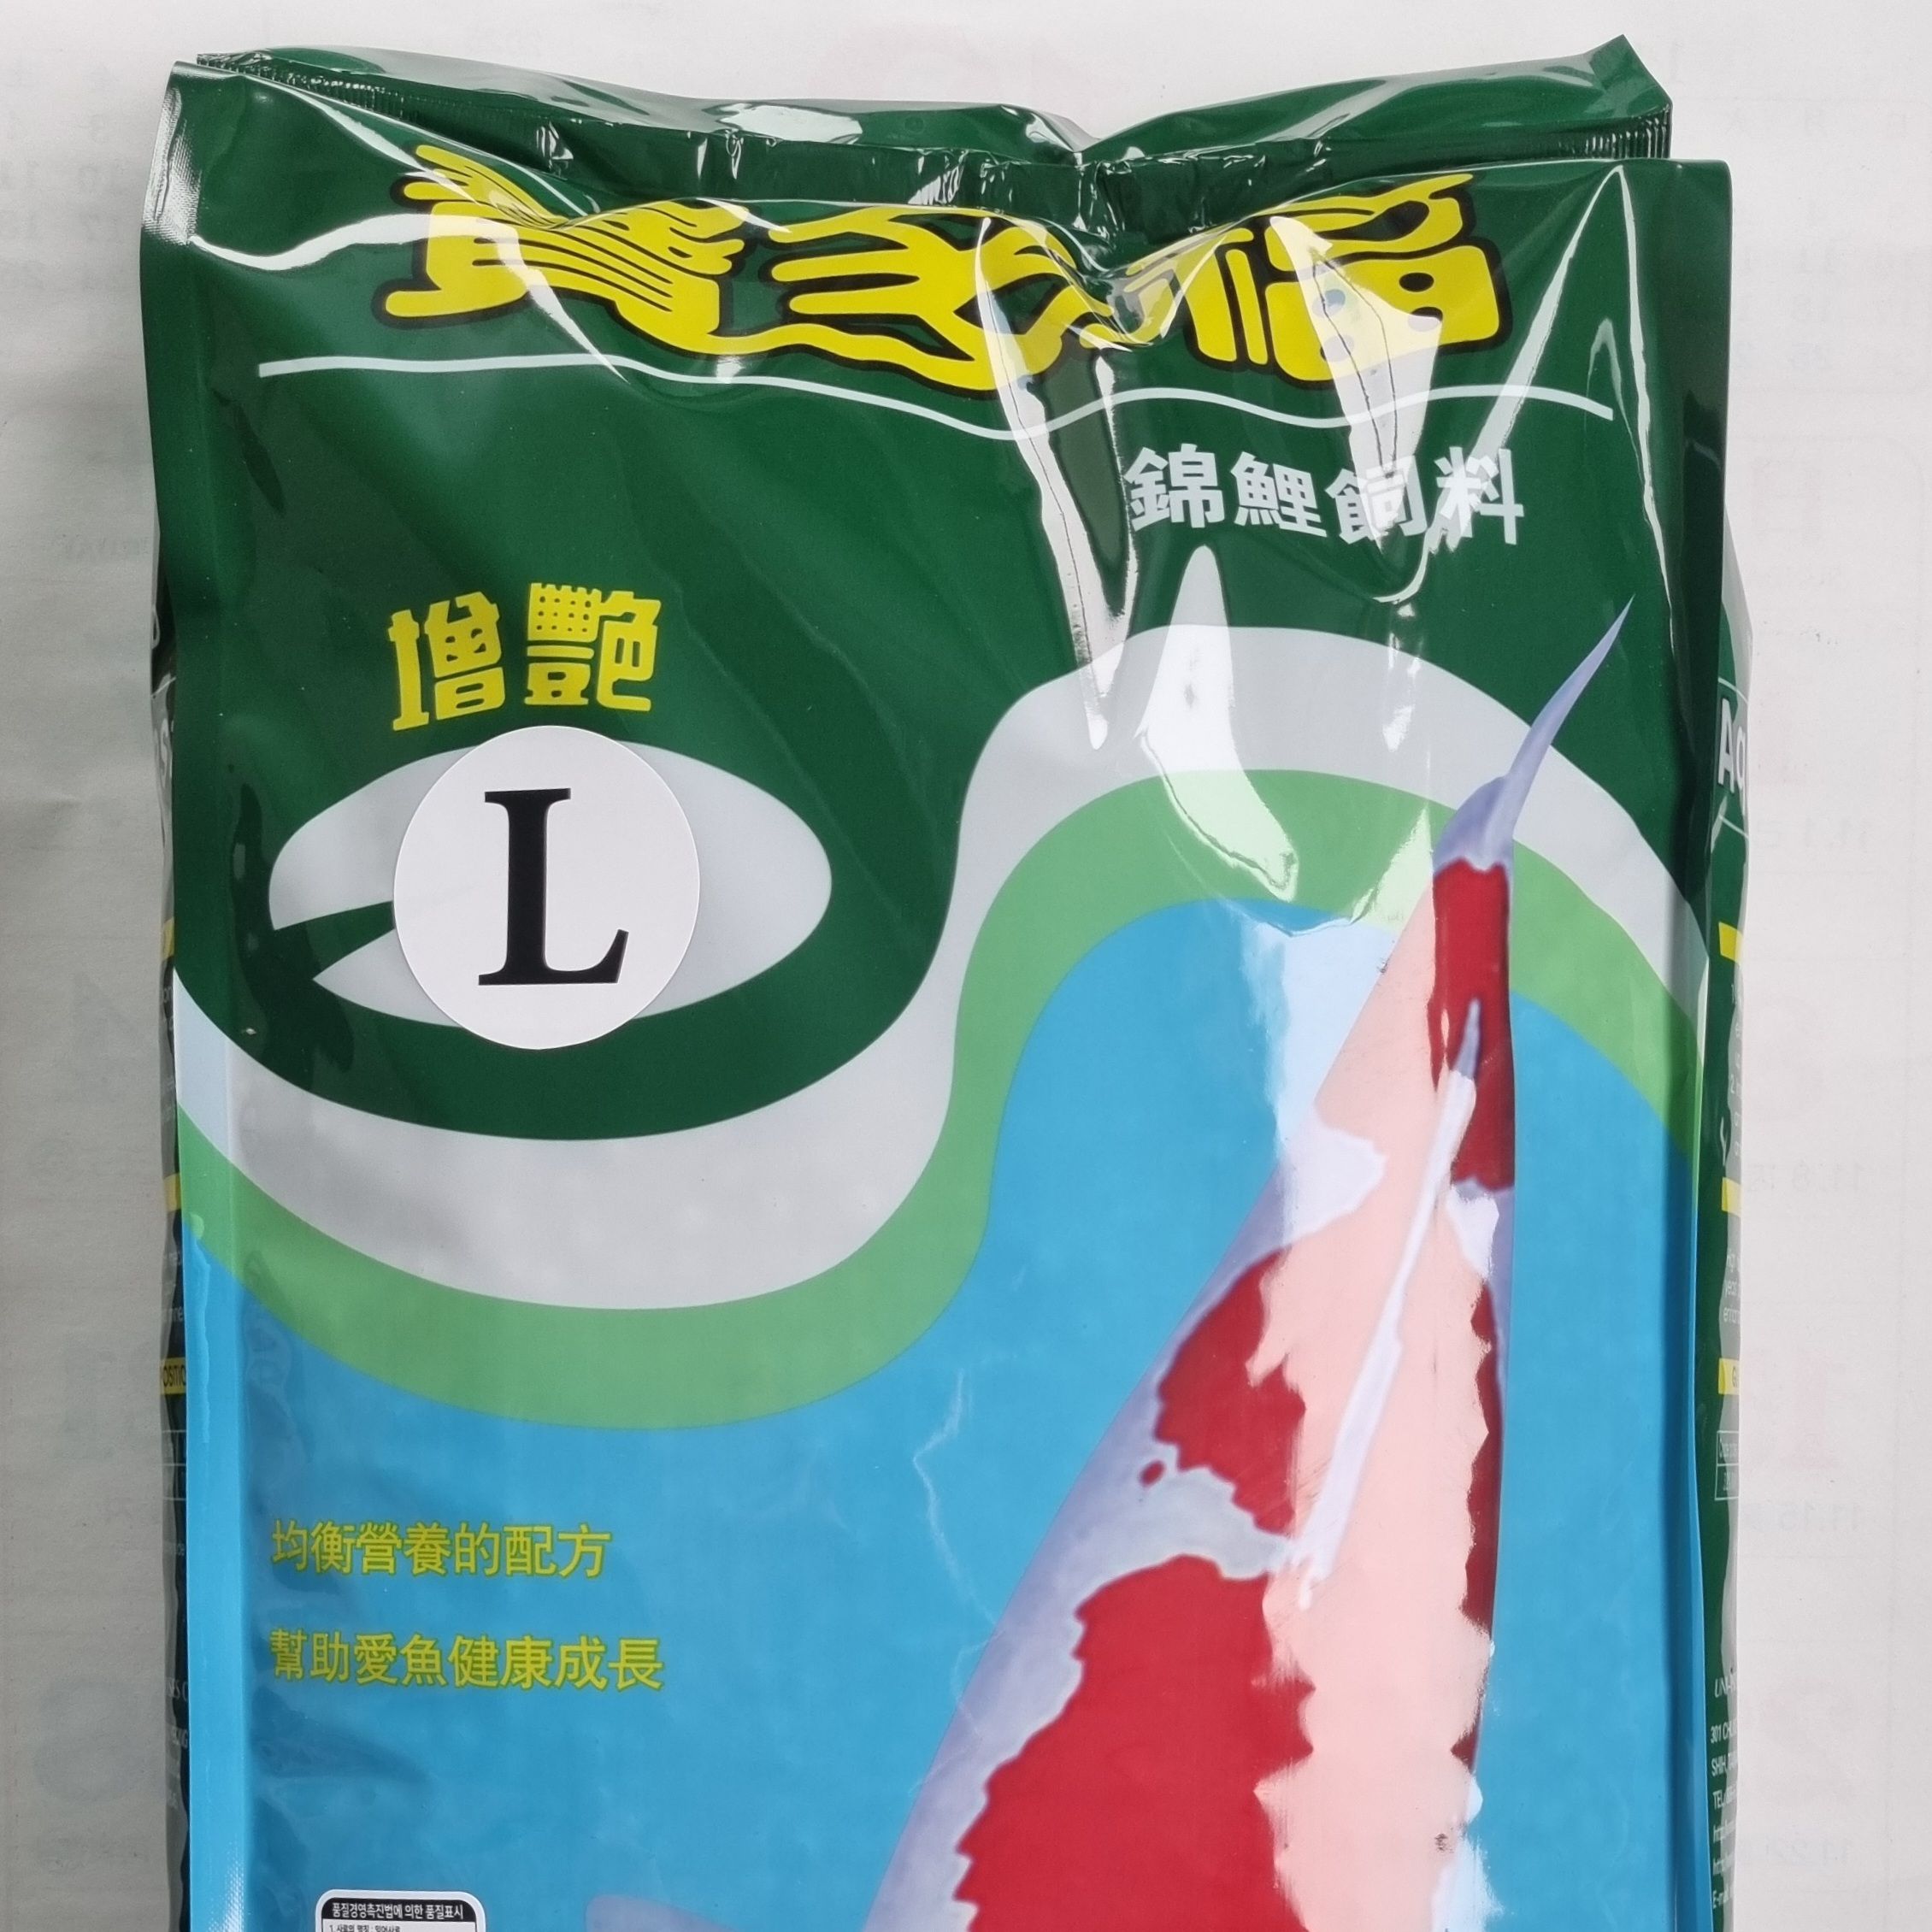 아쿠아마스터잉어사료 5kg(L) 코이푸드비단잉어사료